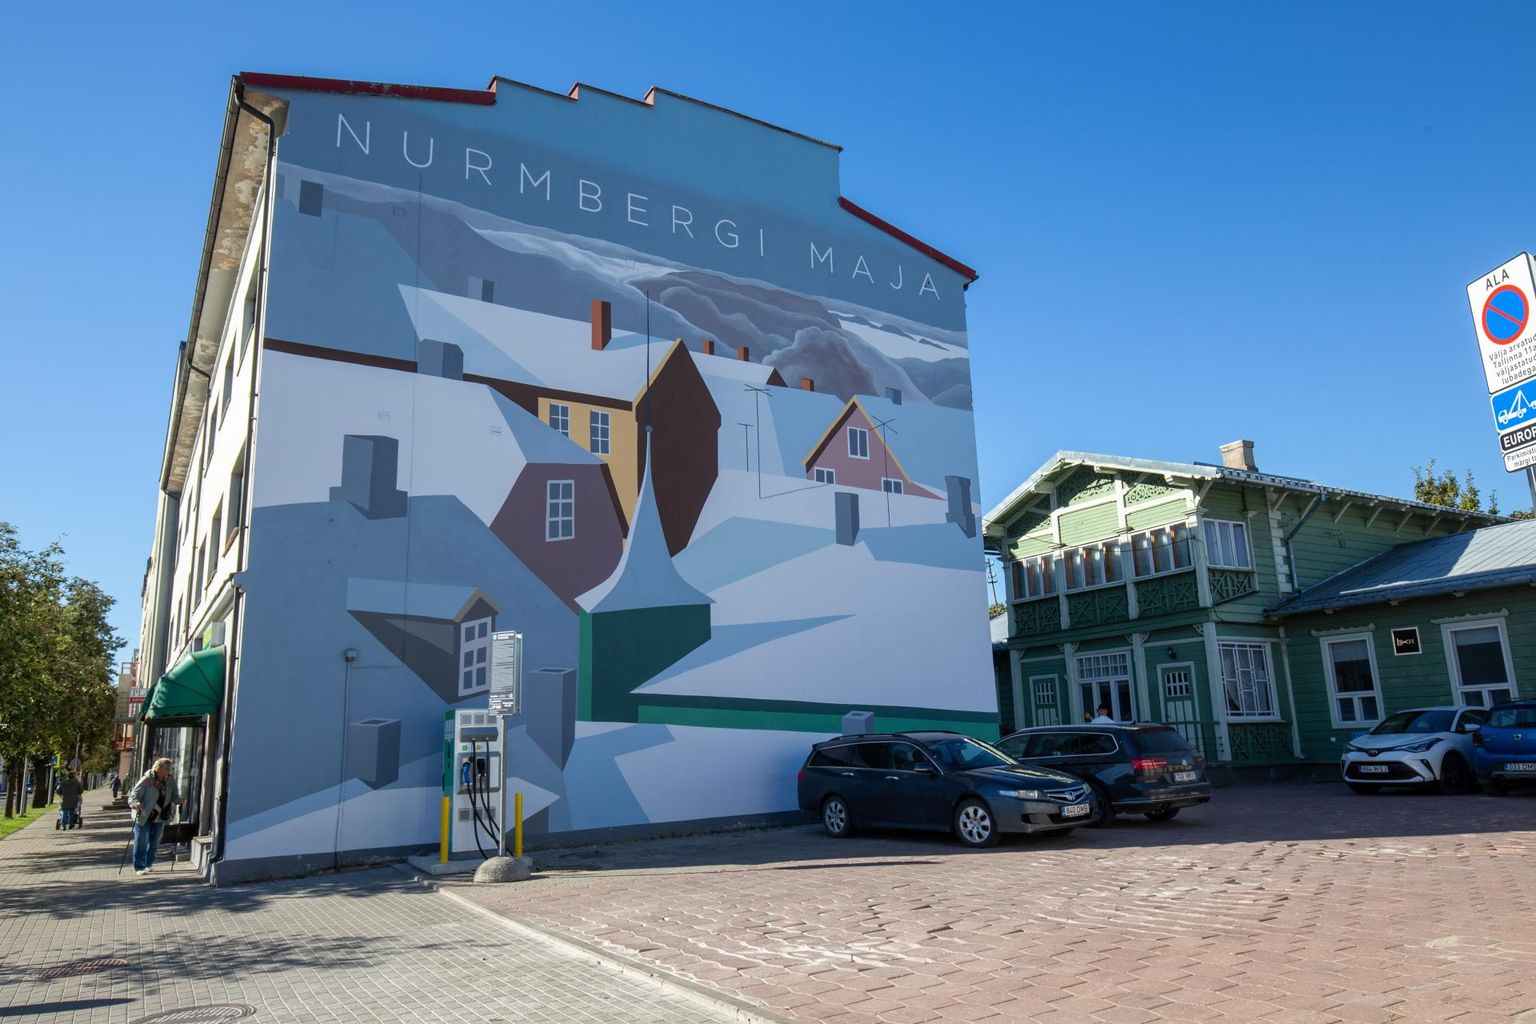 Viljandi peatänava äärse Nurmbergi maja otsaseina kaunistav suur seinamaal sai lõpuks valmis.